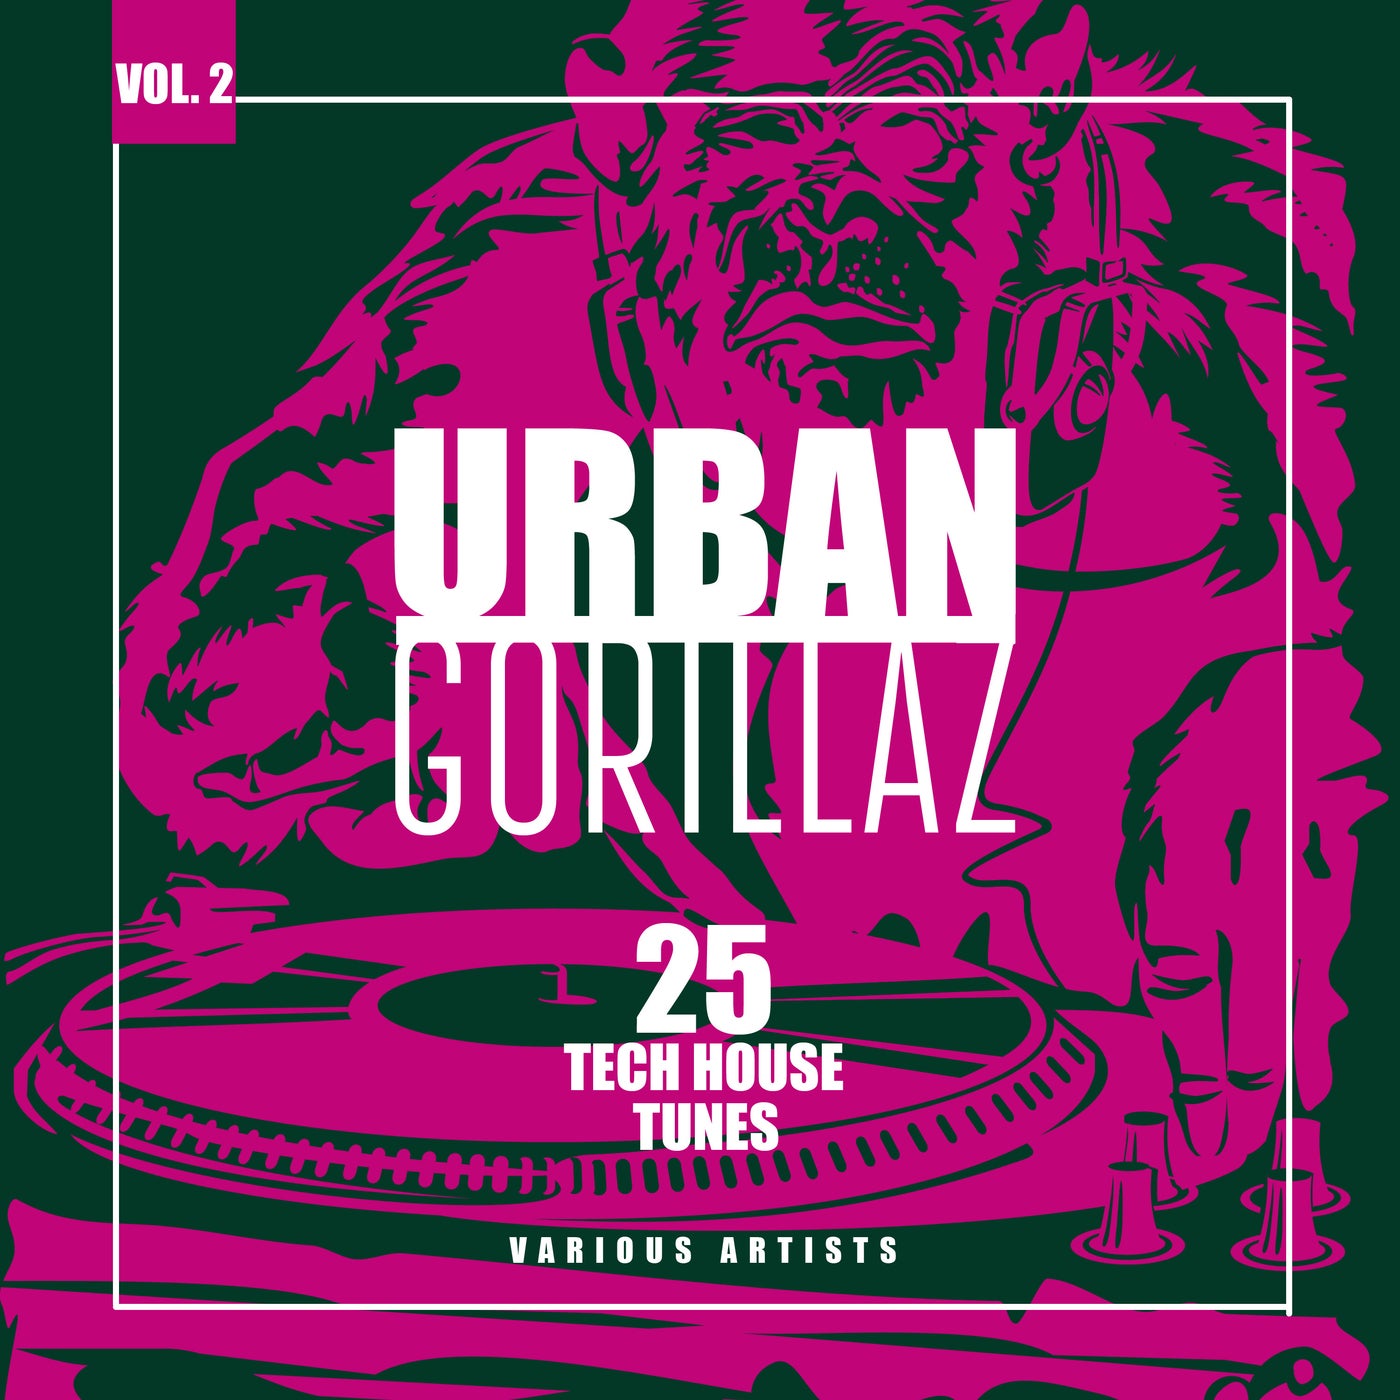 Urban Gorillaz, Vol. 2 (25 Tech House Tunes)